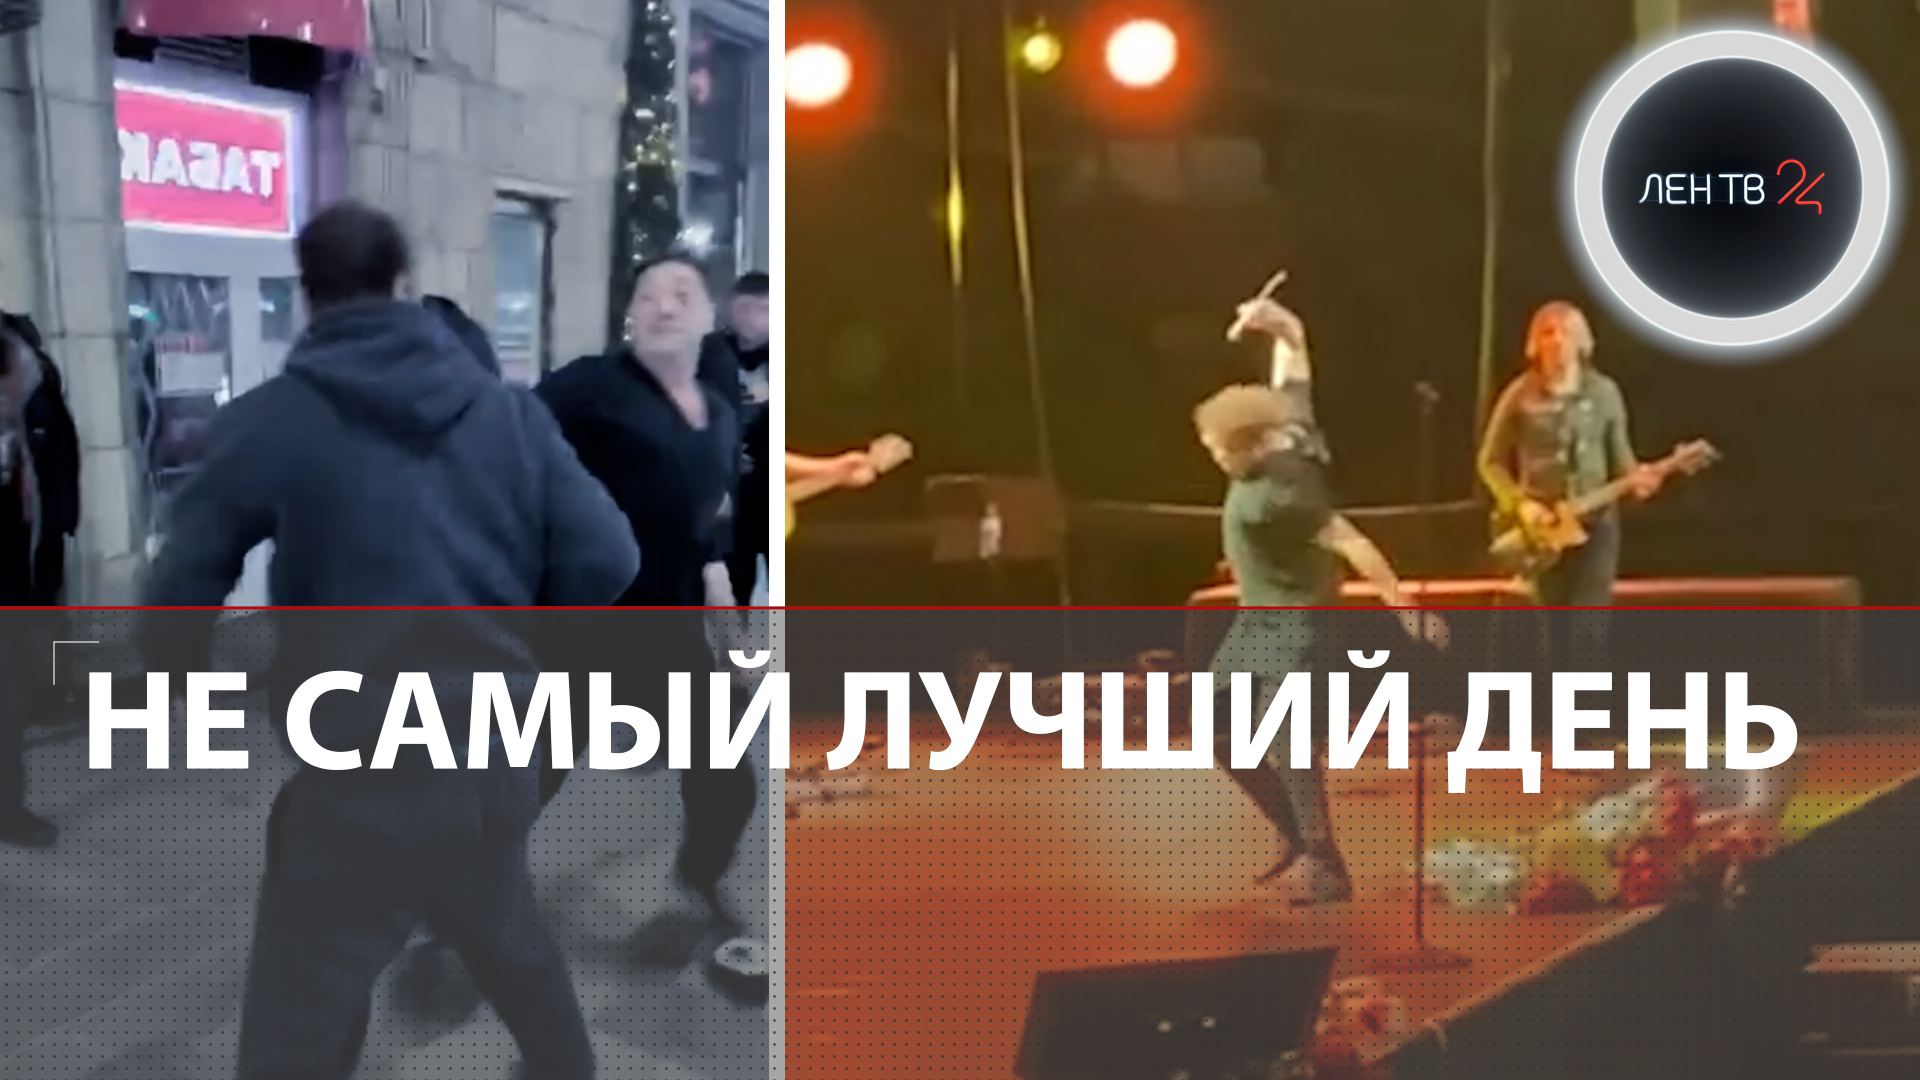 Григорий Лепс подрался у бара и бросил микрофон на концерте | Что случилось с певцом в Петербурге?